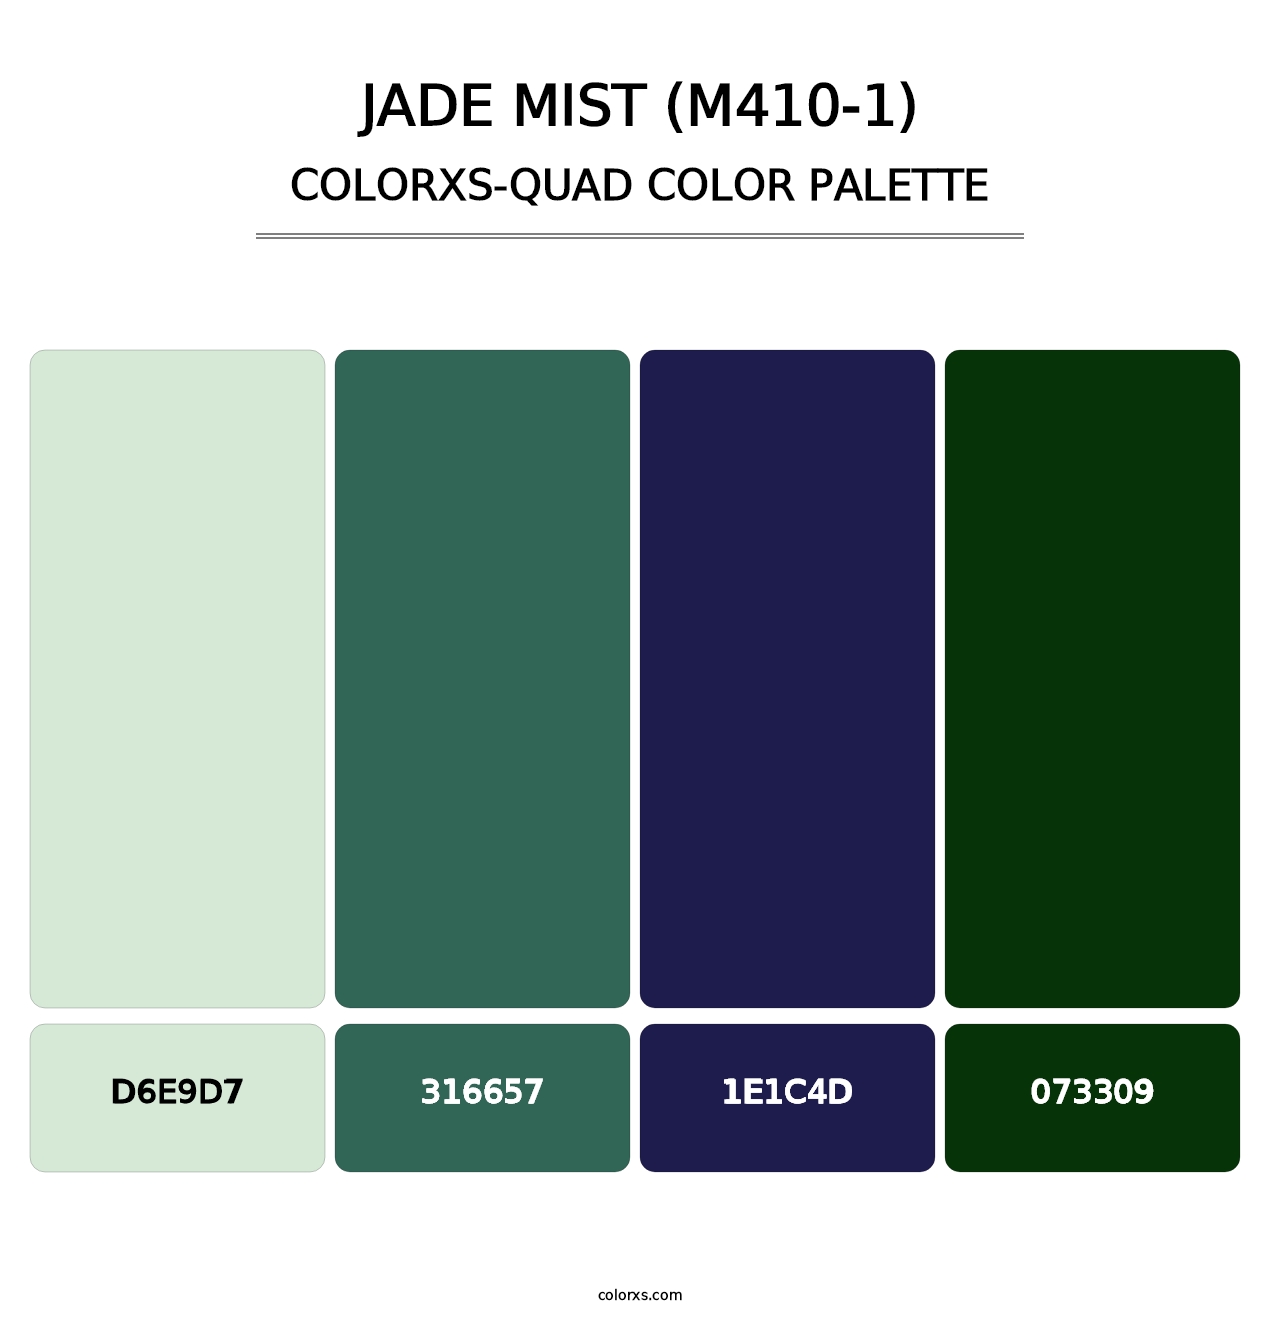 Jade Mist (M410-1) - Colorxs Quad Palette